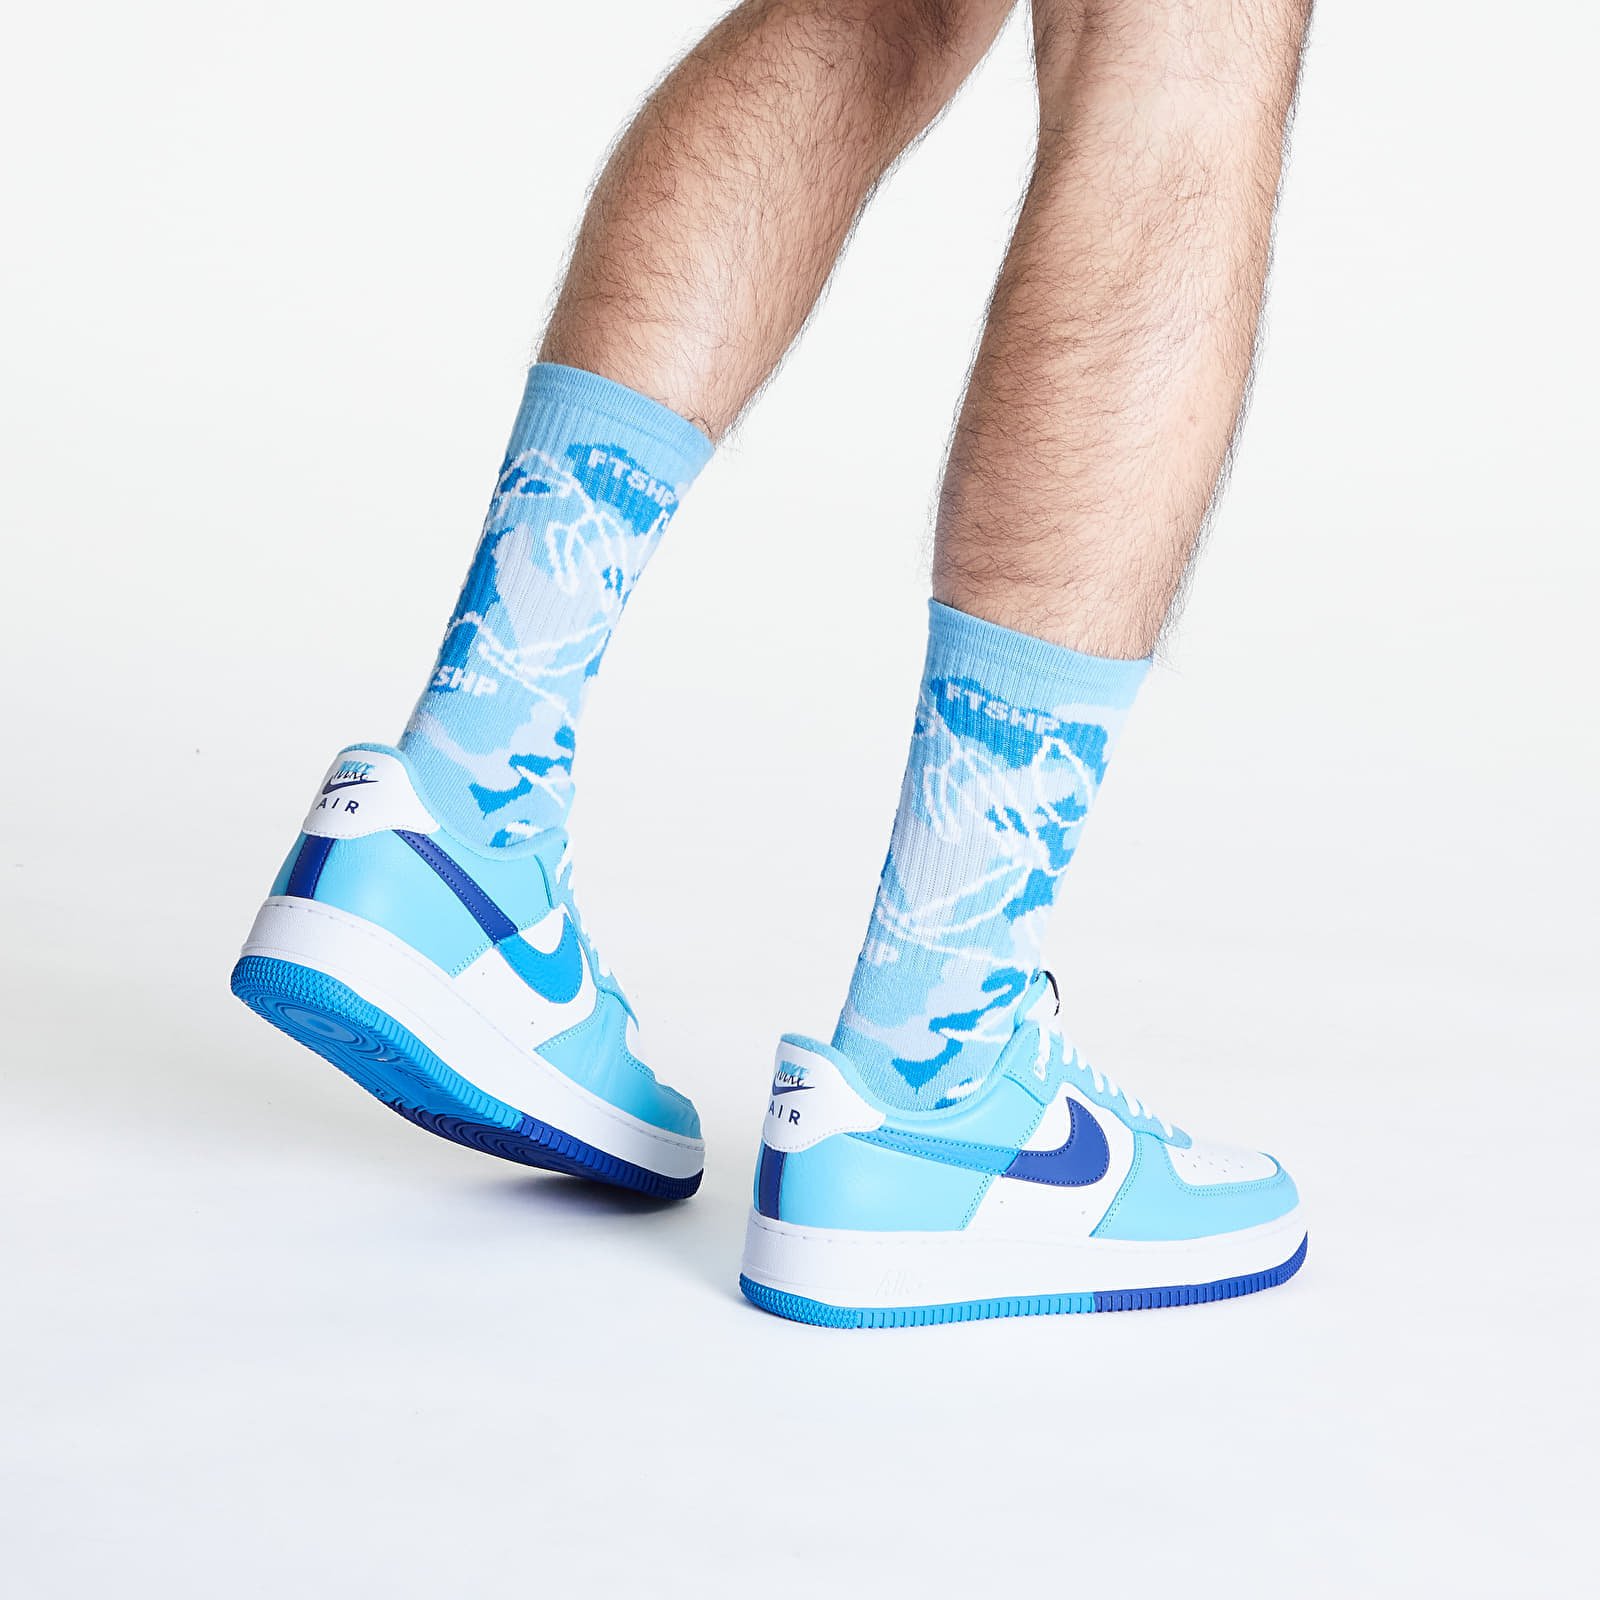 The Basketball Socks